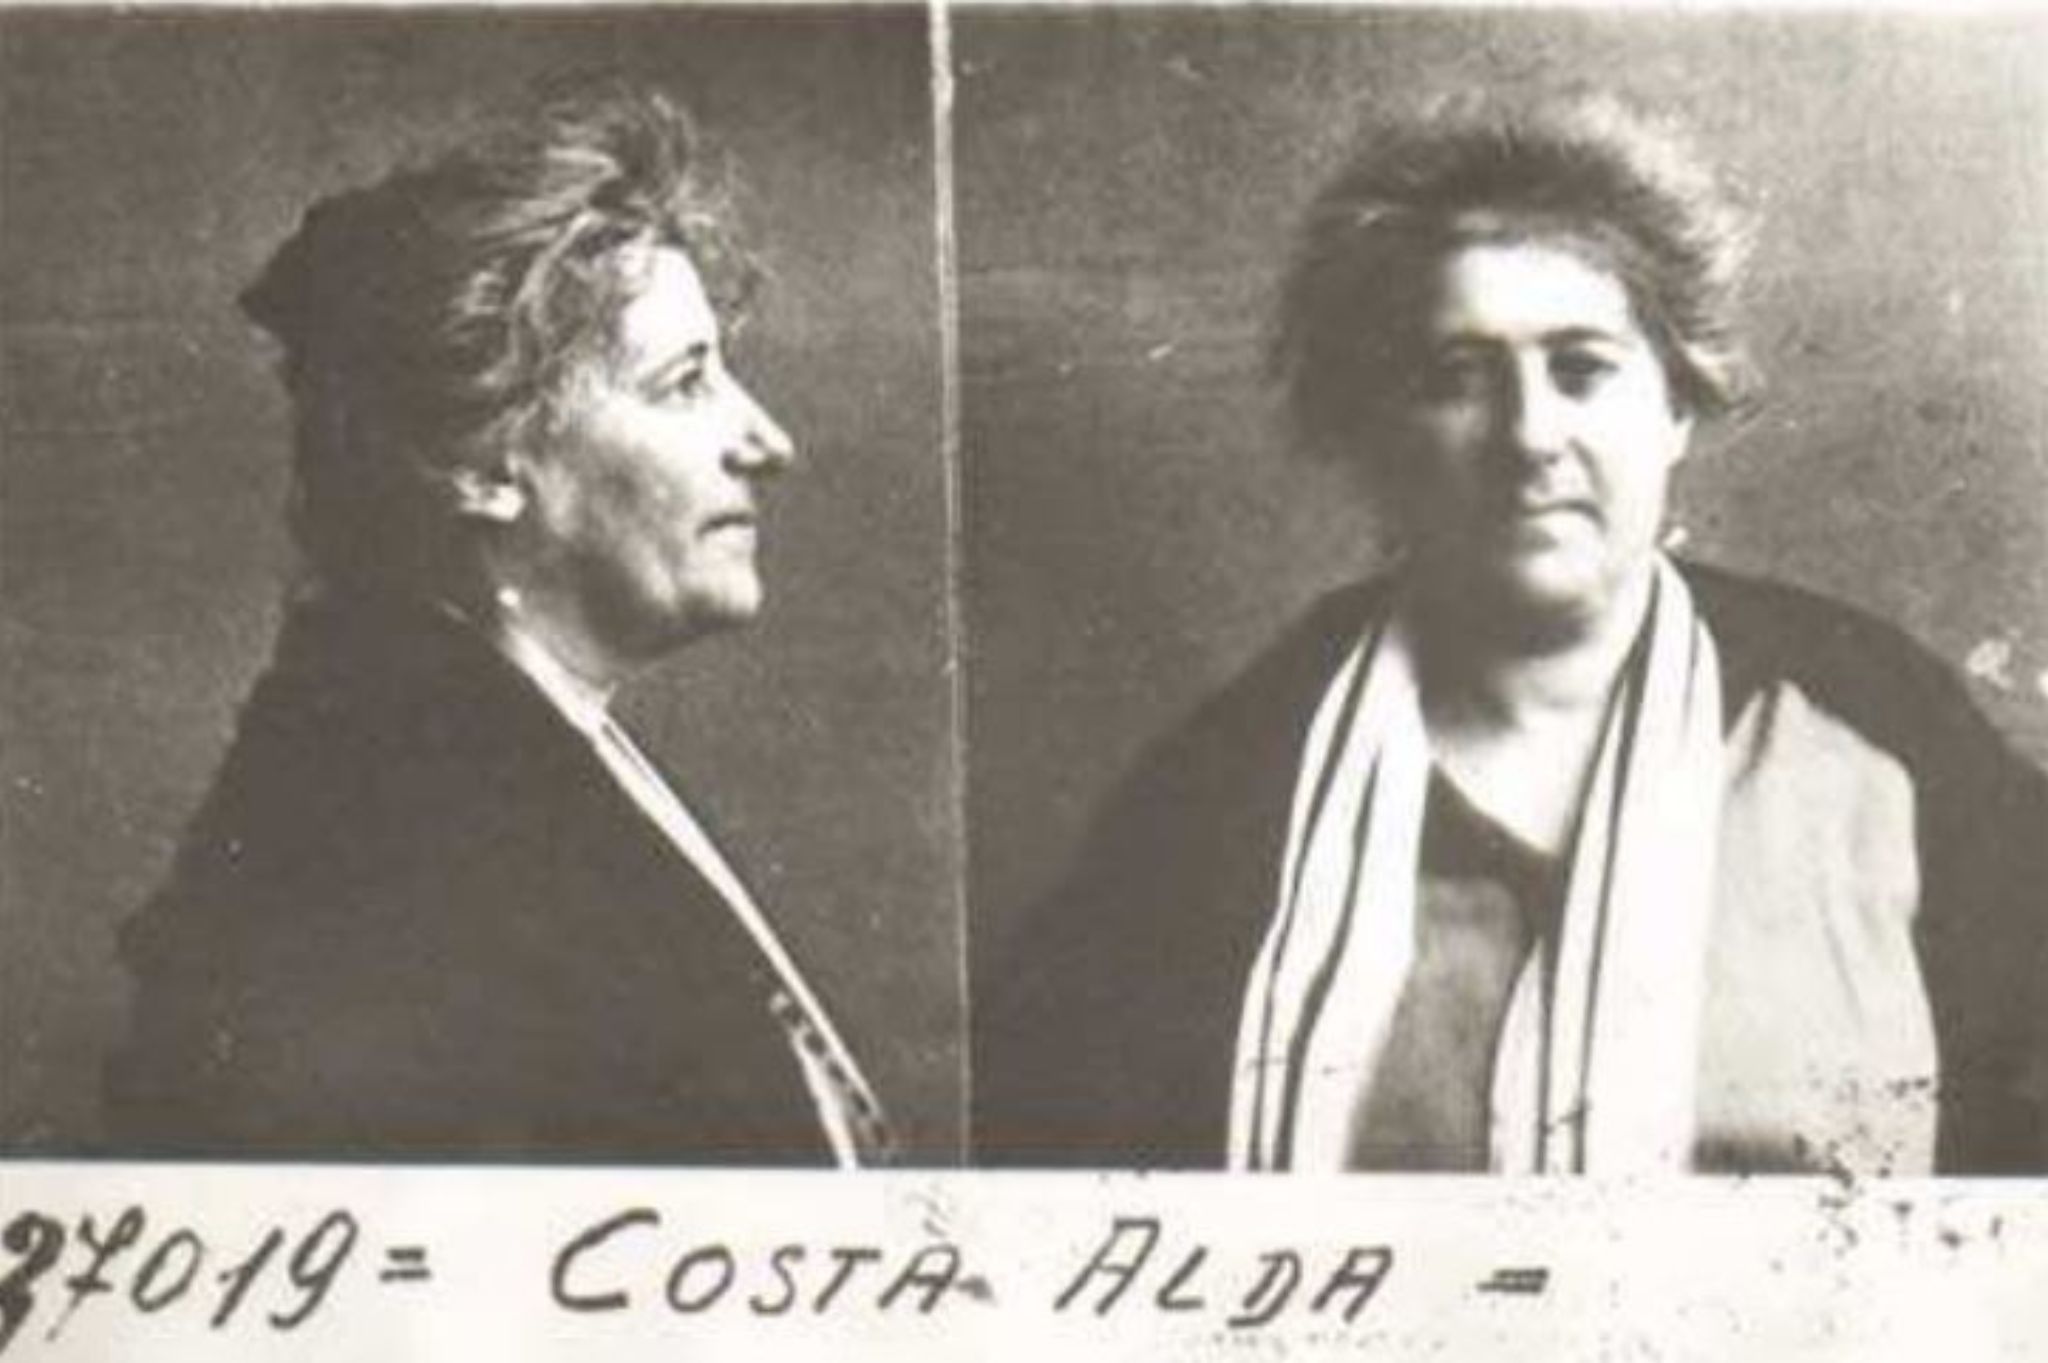 Alda Costa Ferrara